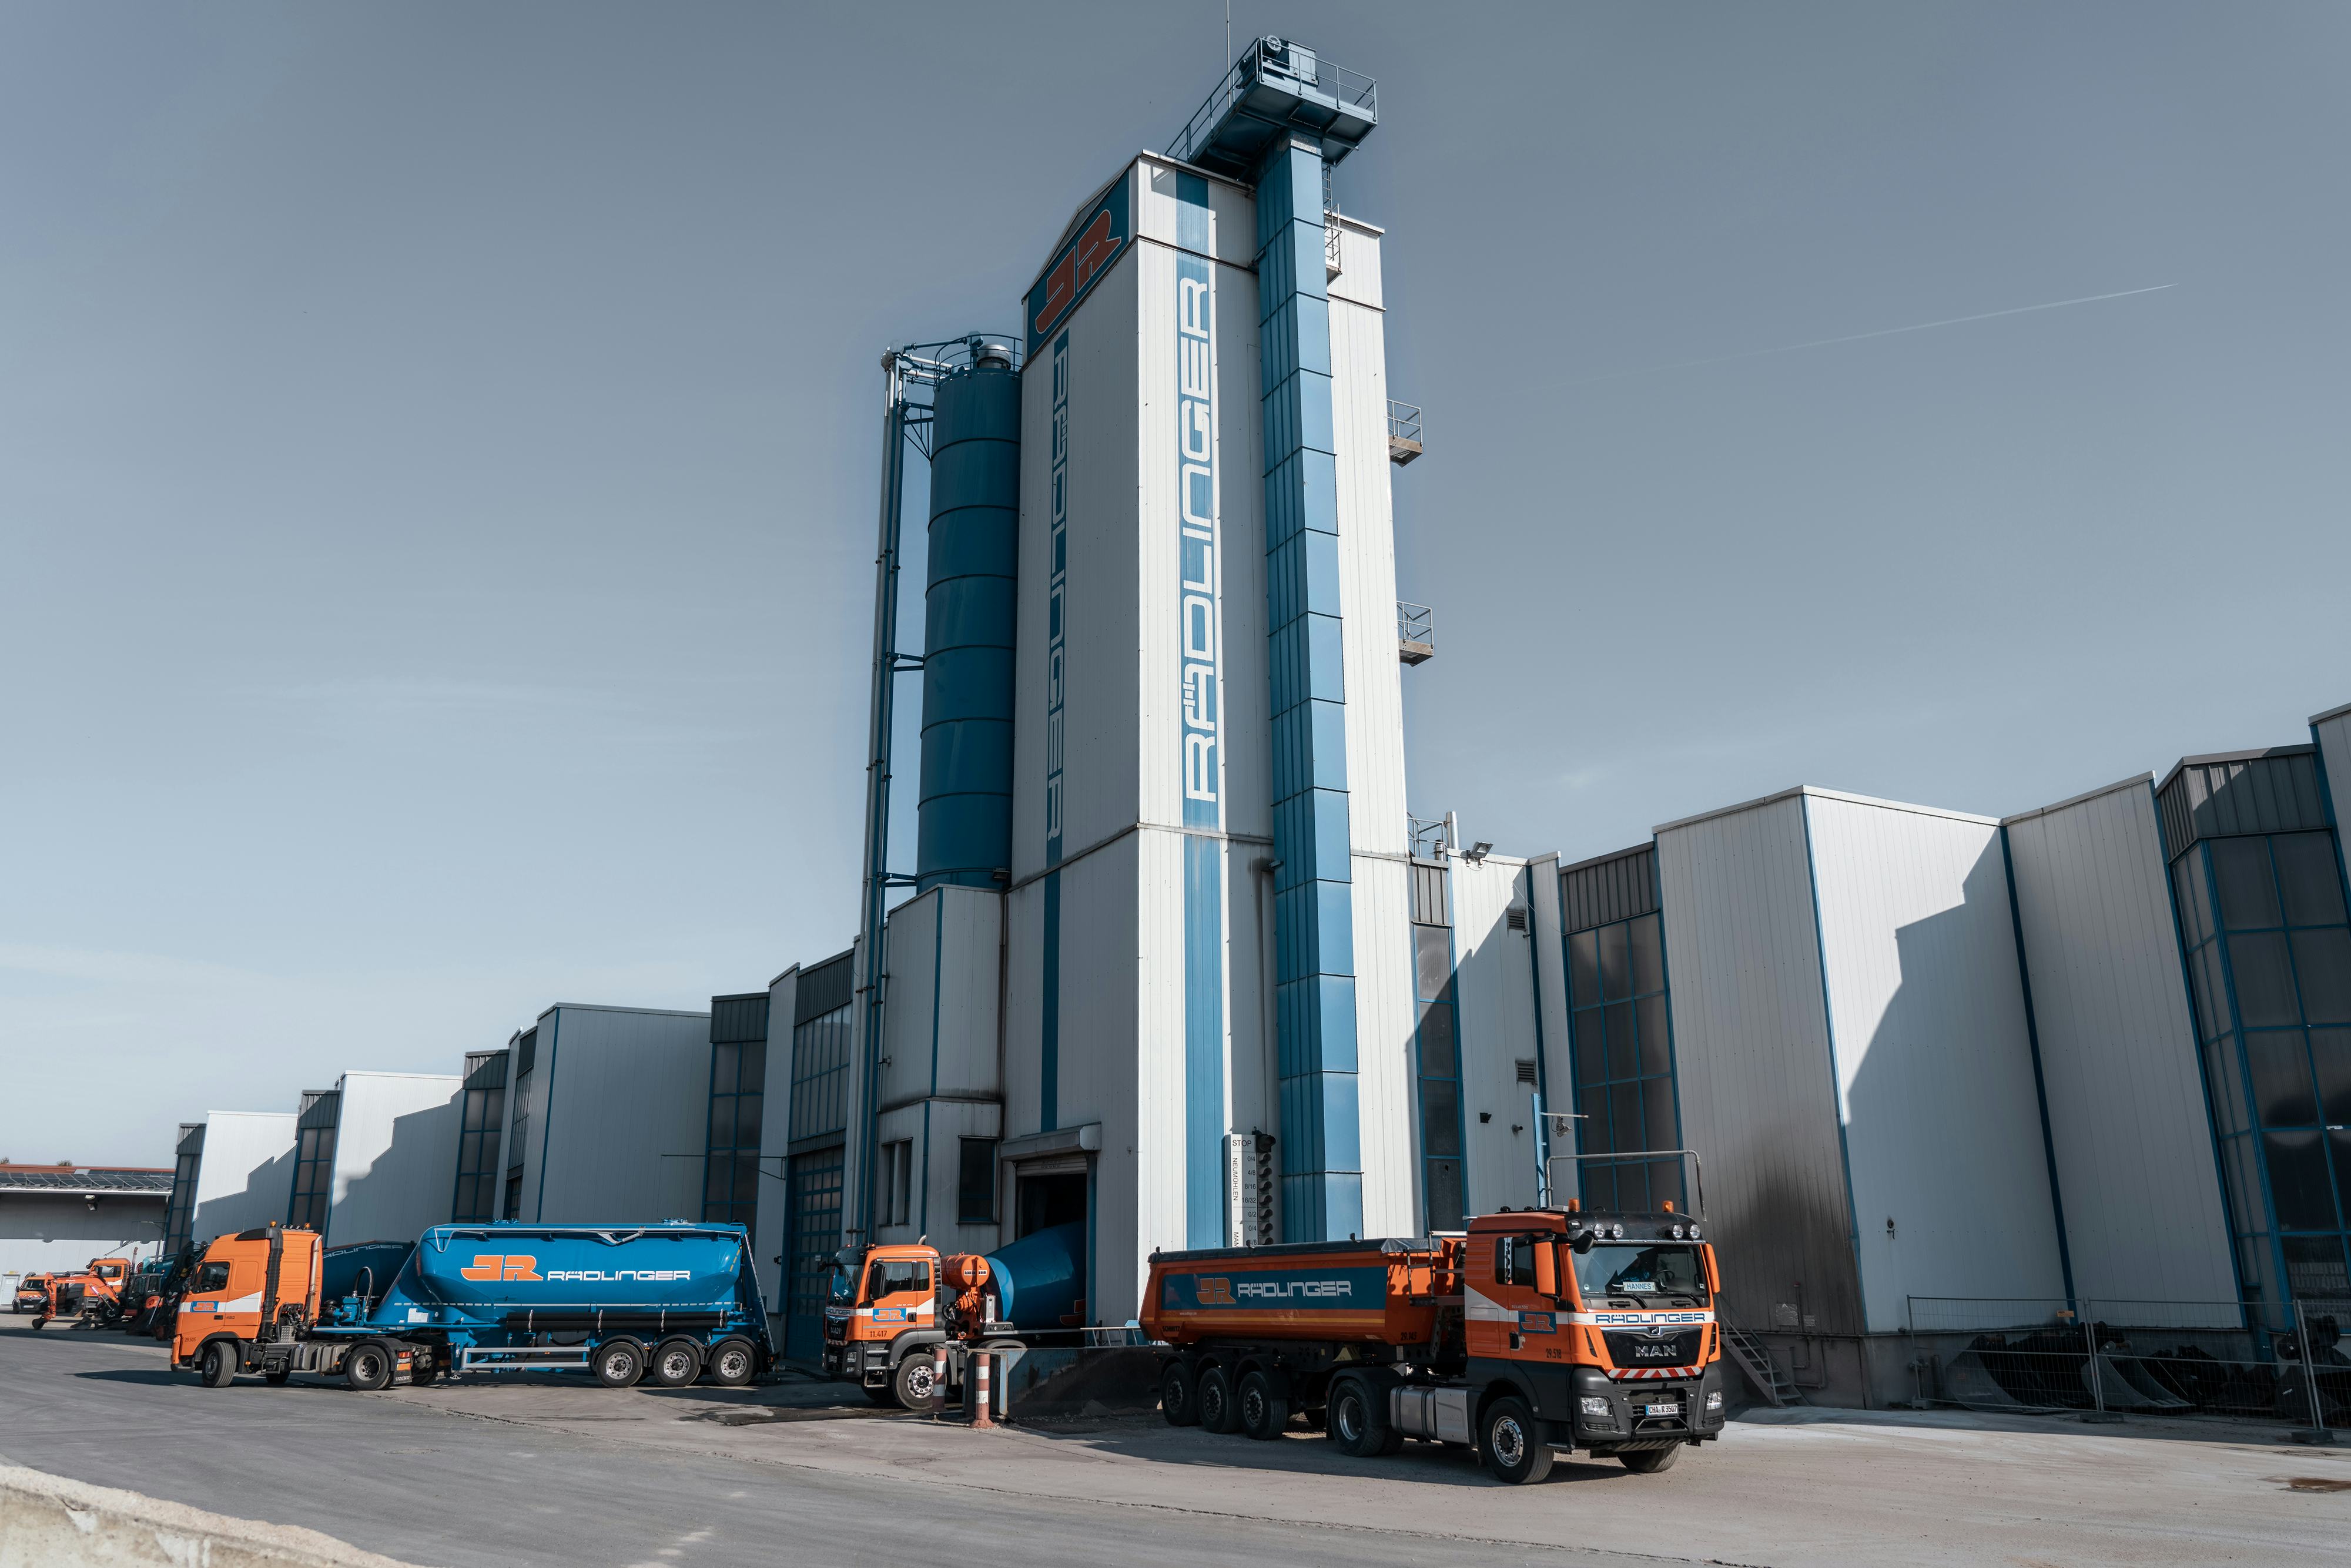 Rädlinger Standort in Weiding: Turmanlage des Betontransportwerks von außen, davor verschiedene Maschinen wie Betonmischer, Sattelzug und Lkw mit Kipper